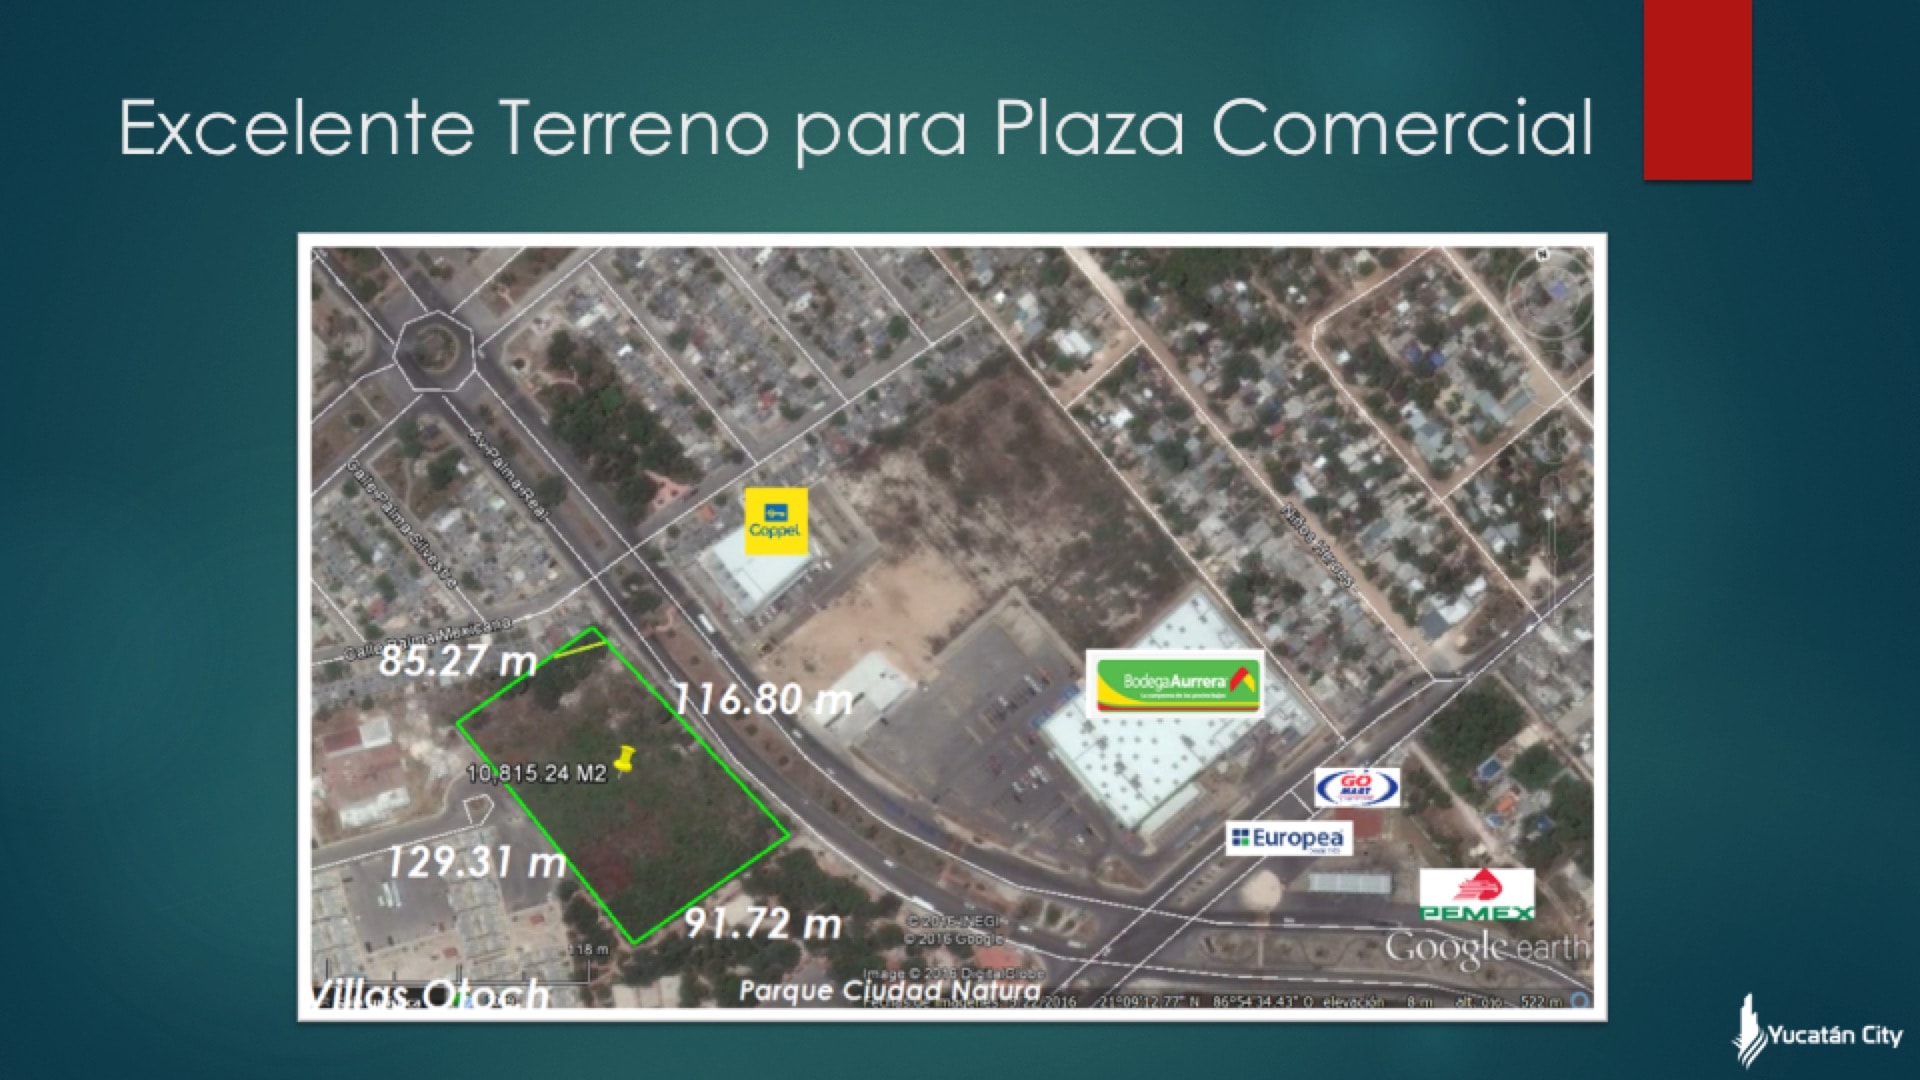 Terreno para Plaza Comercial en Cancún.